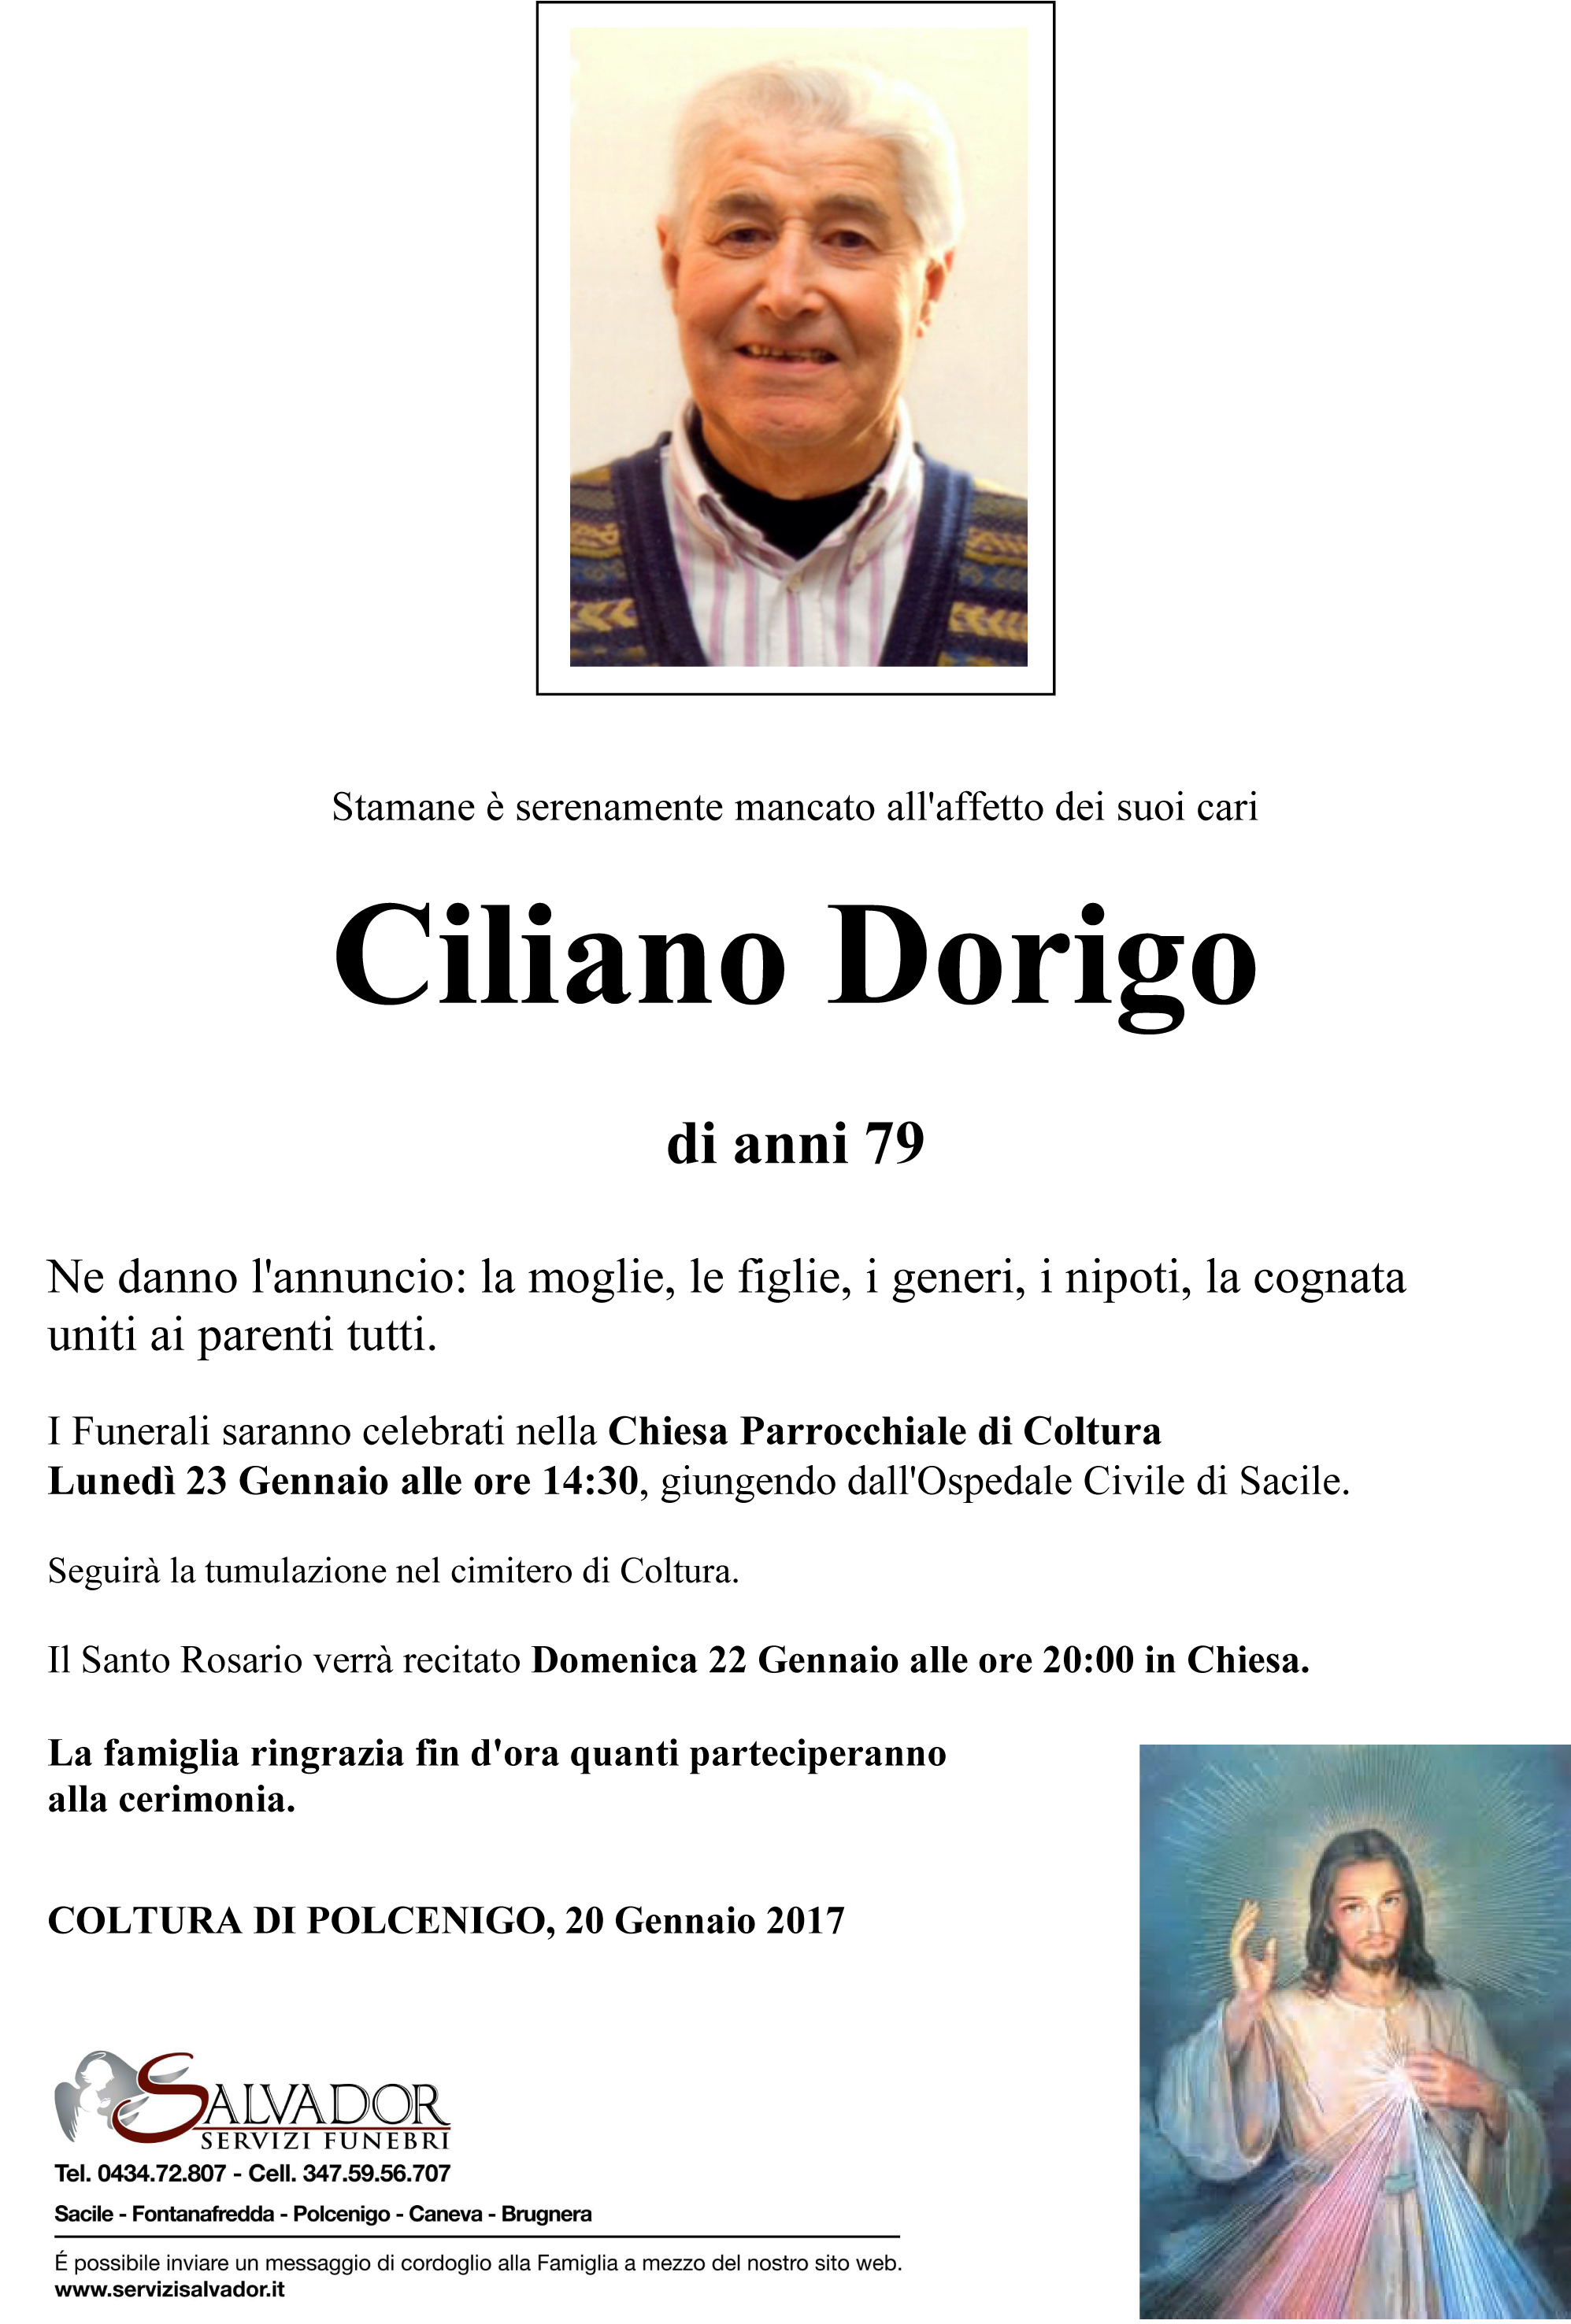 Ciliano Dorigo - Salvador